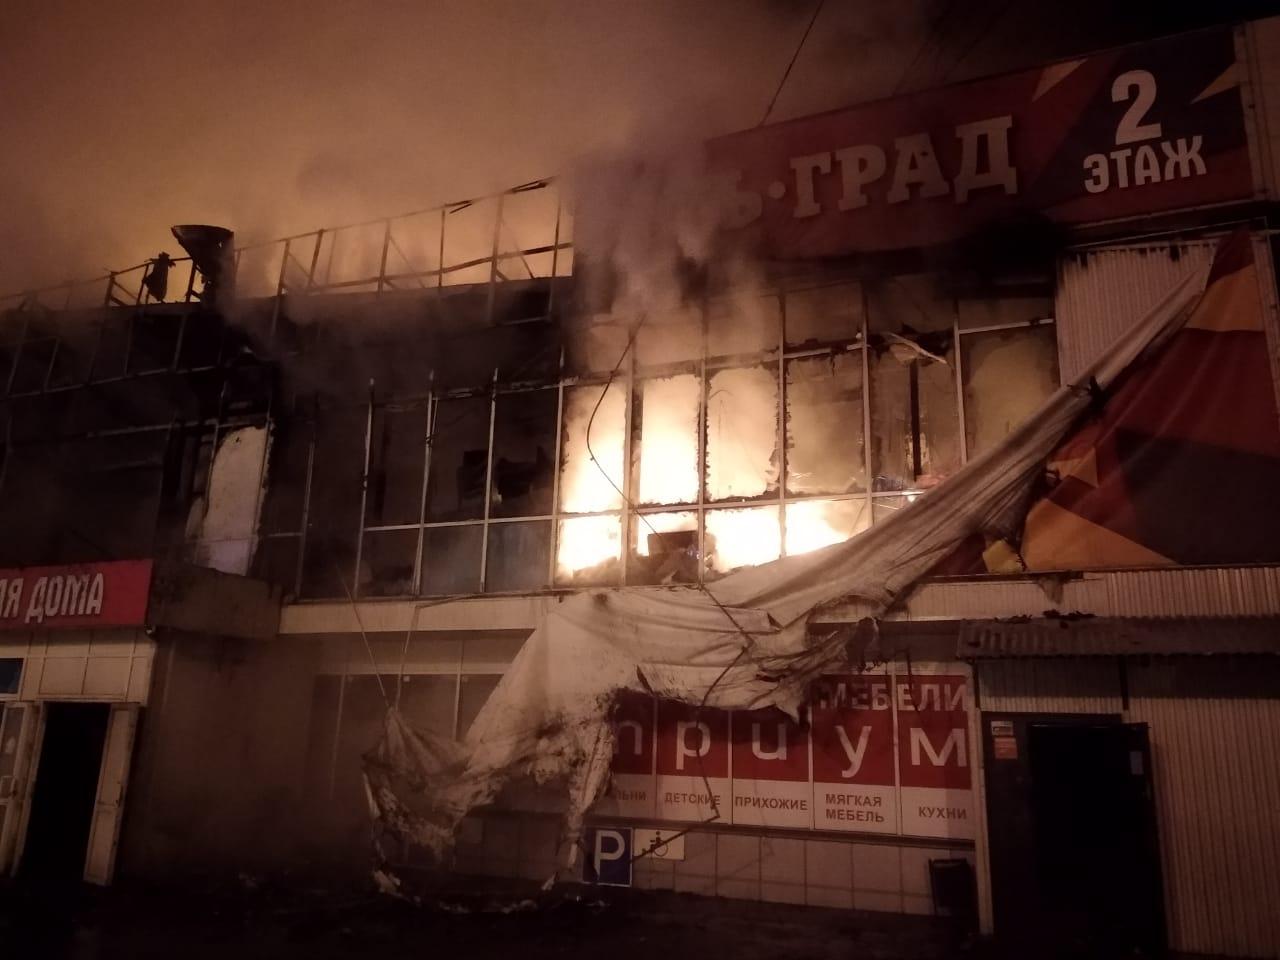 Мебельный сгорел. Пожары в мебельных центрах. Сгорел магазин в Иркутске Абсолют. Фотография горящего магазина. Горит мебель.